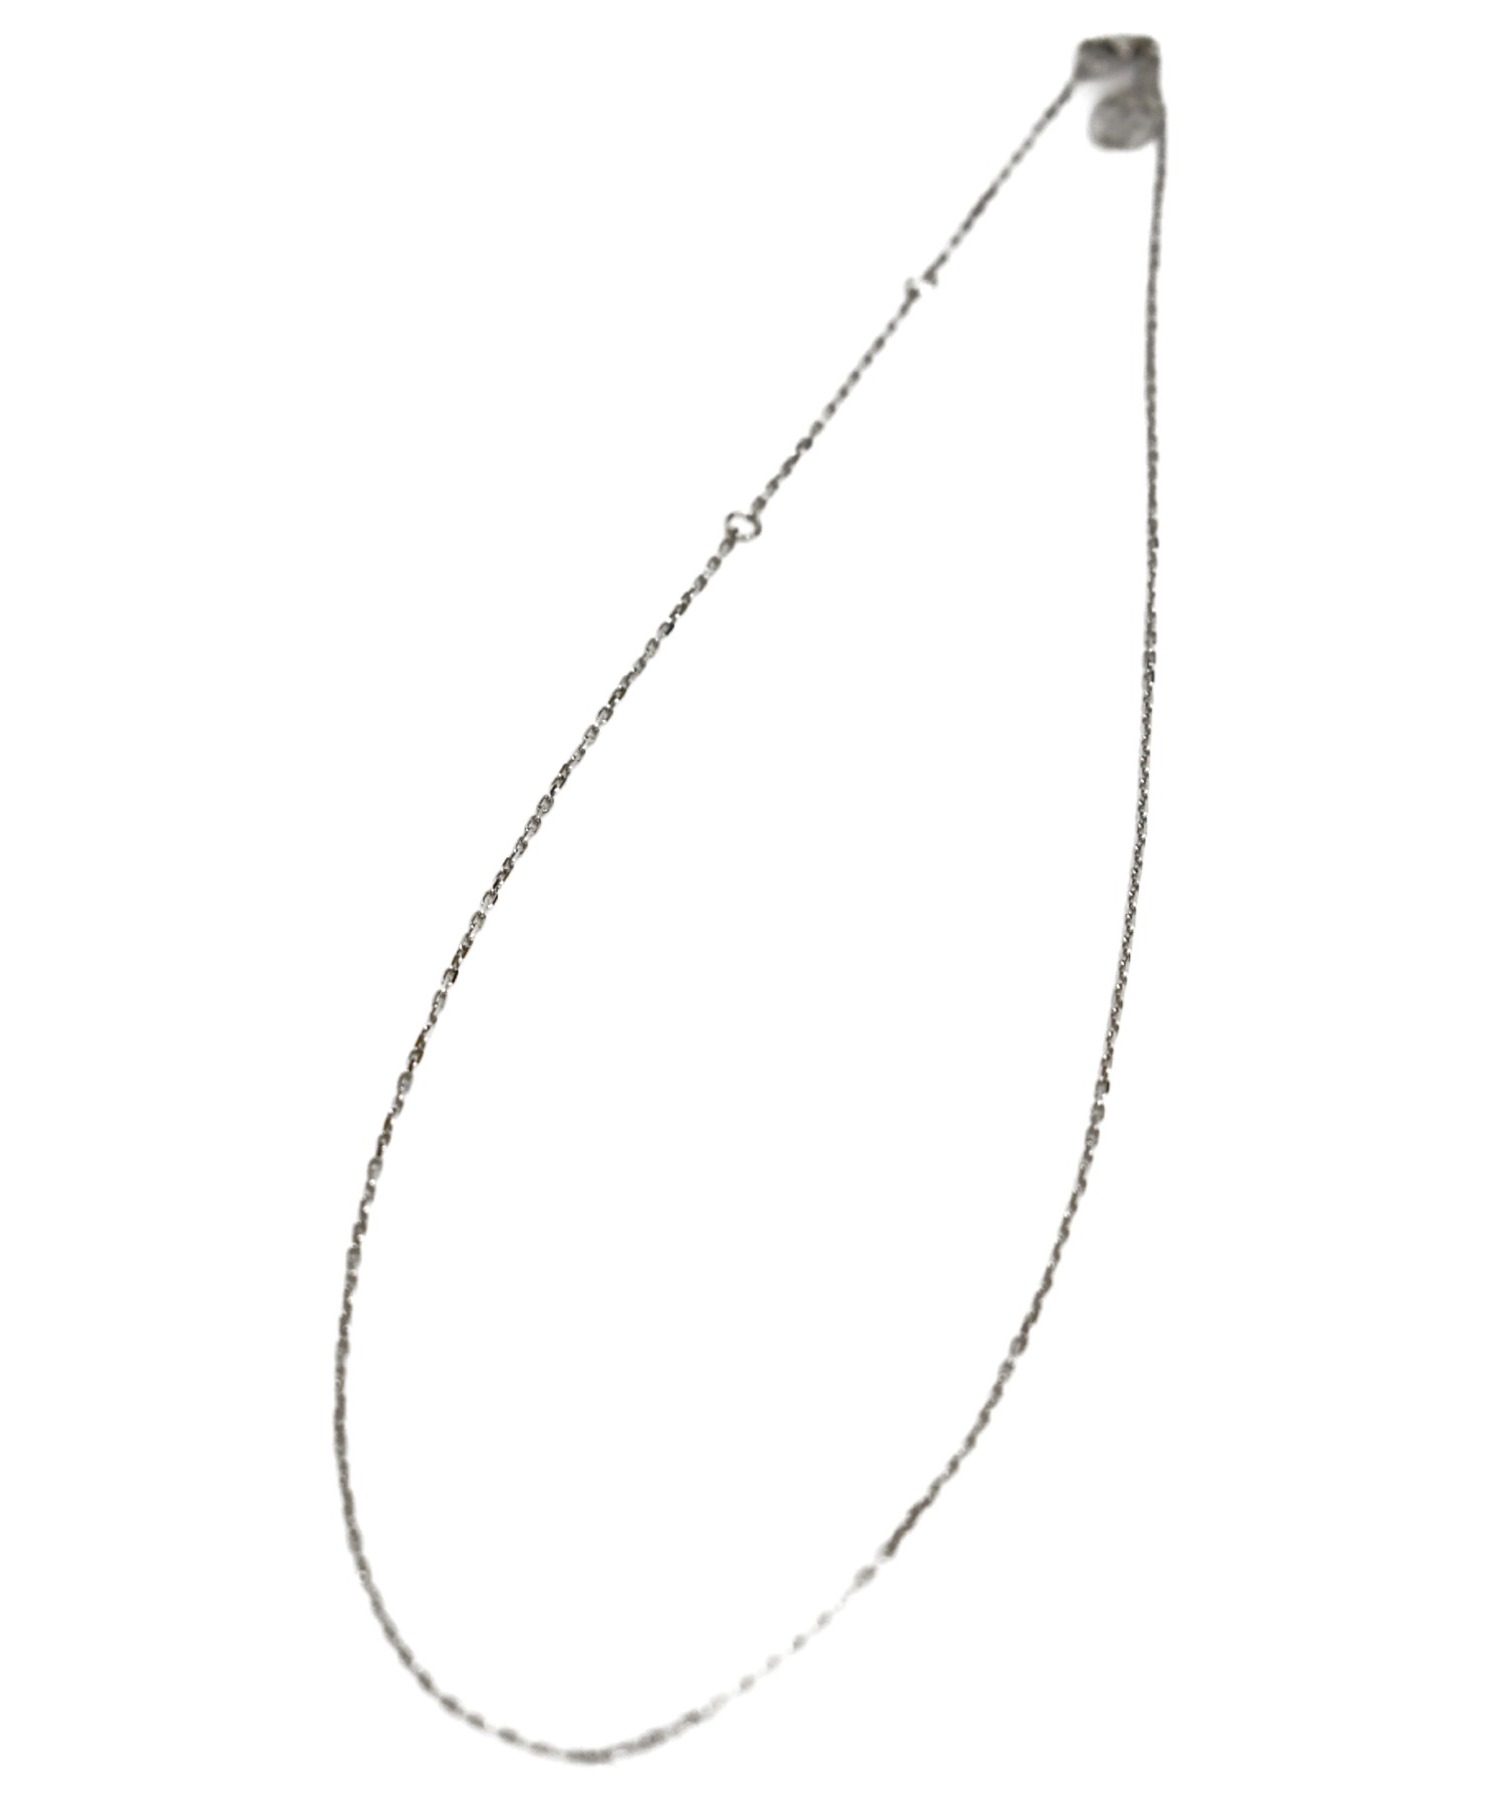 中古 古着通販 Cartier カルティエ K18ホワイトゴールドチェーンネックレス シルバー サイズ 下記参照 Crb Chain Necklace ブランド 古着通販 トレファク公式 Trefac Fashion